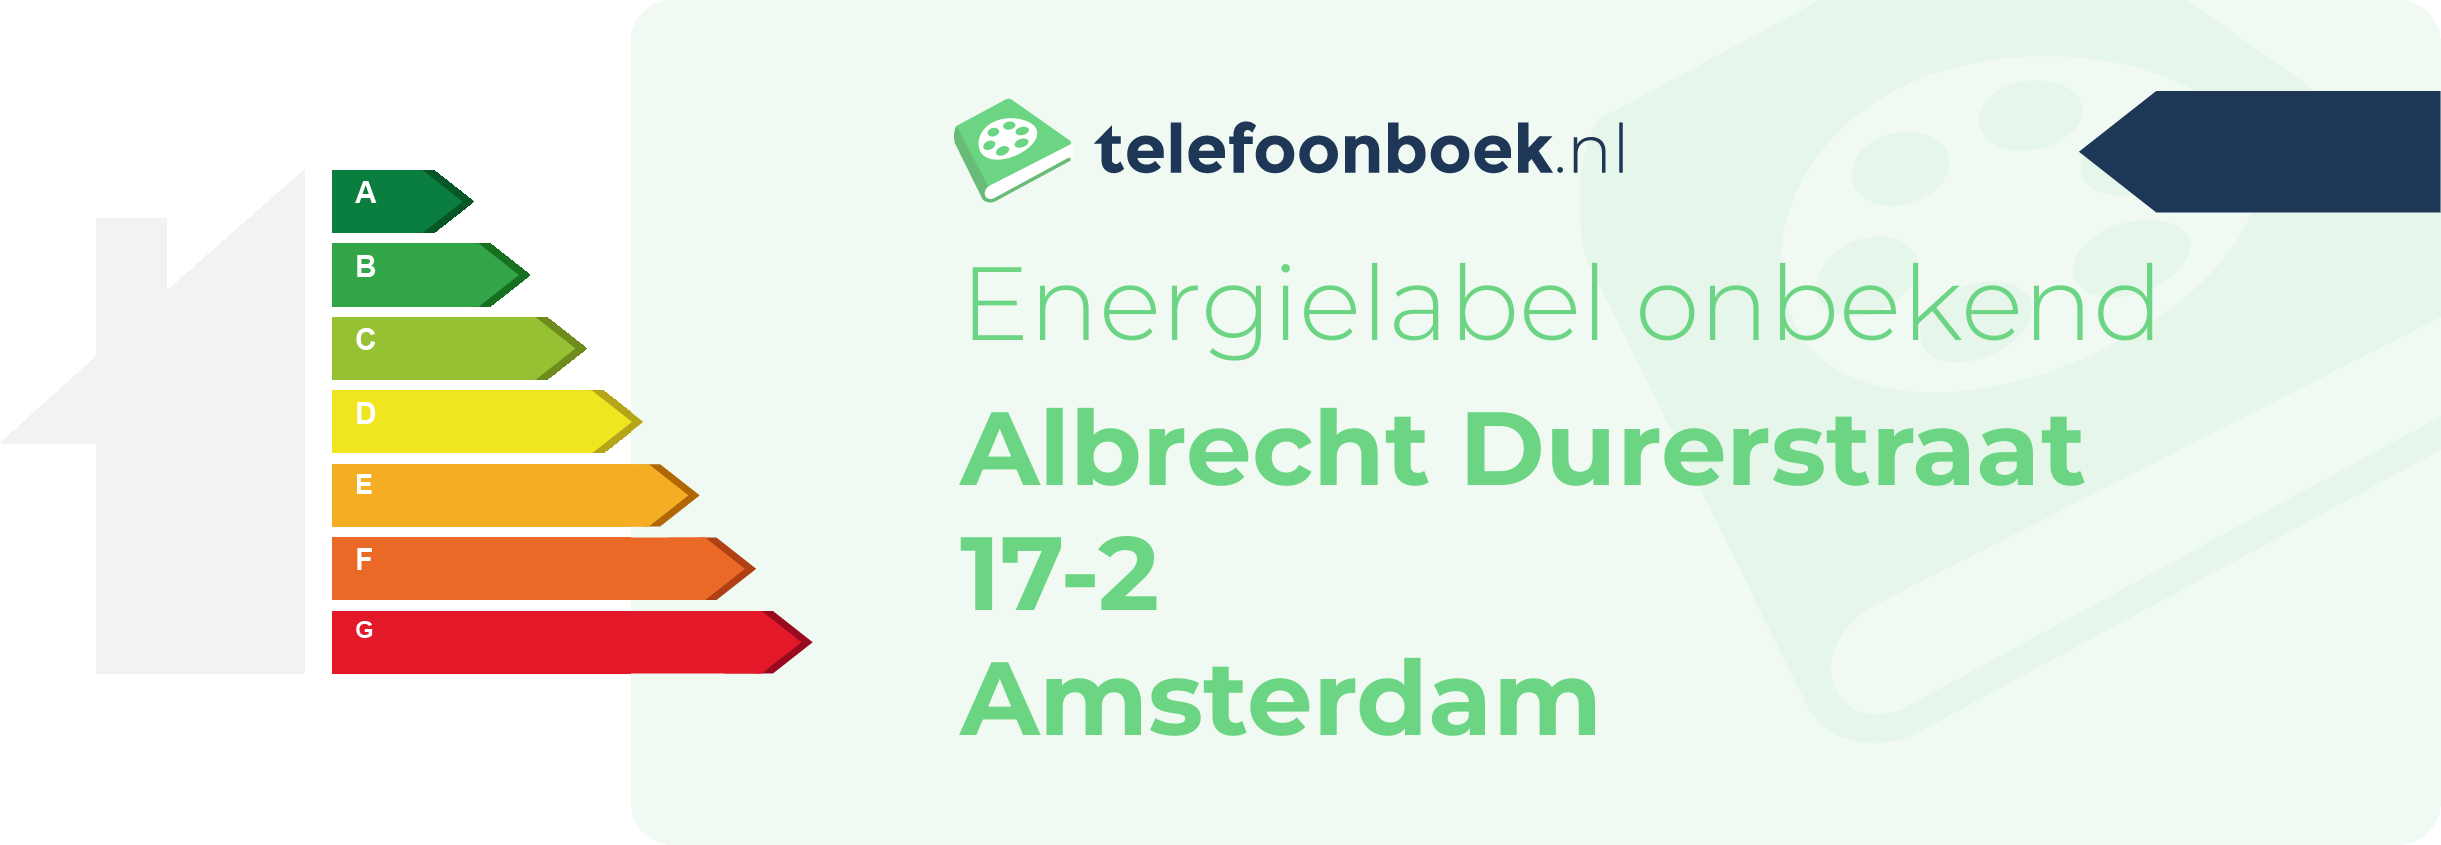 Energielabel Albrecht Durerstraat 17-2 Amsterdam